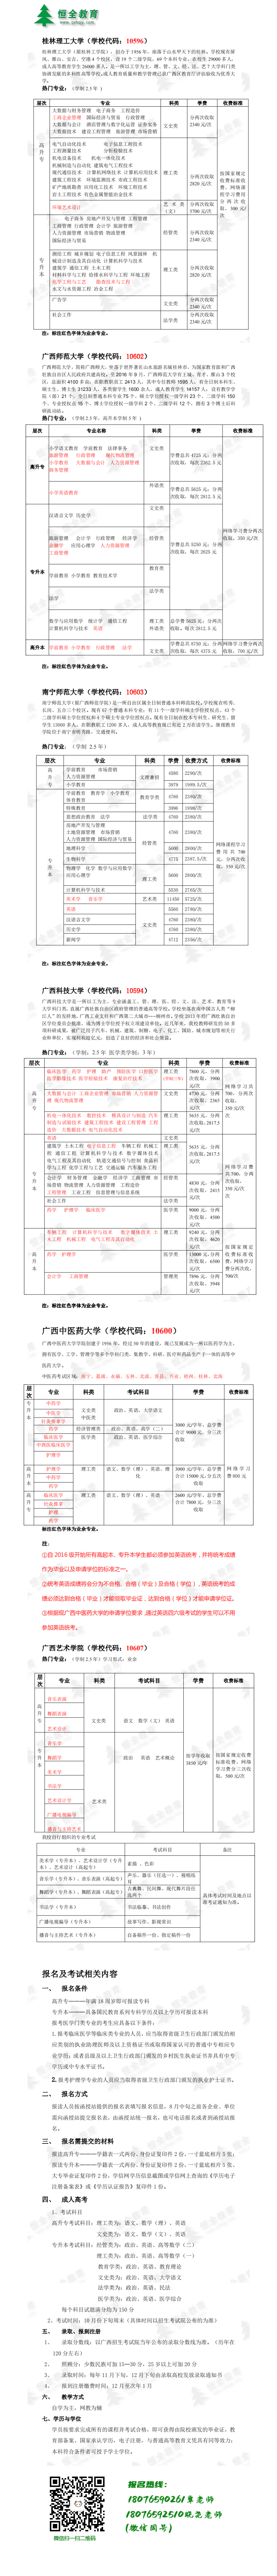 2021年學歷招生簡章(8.25)長圖_0.png